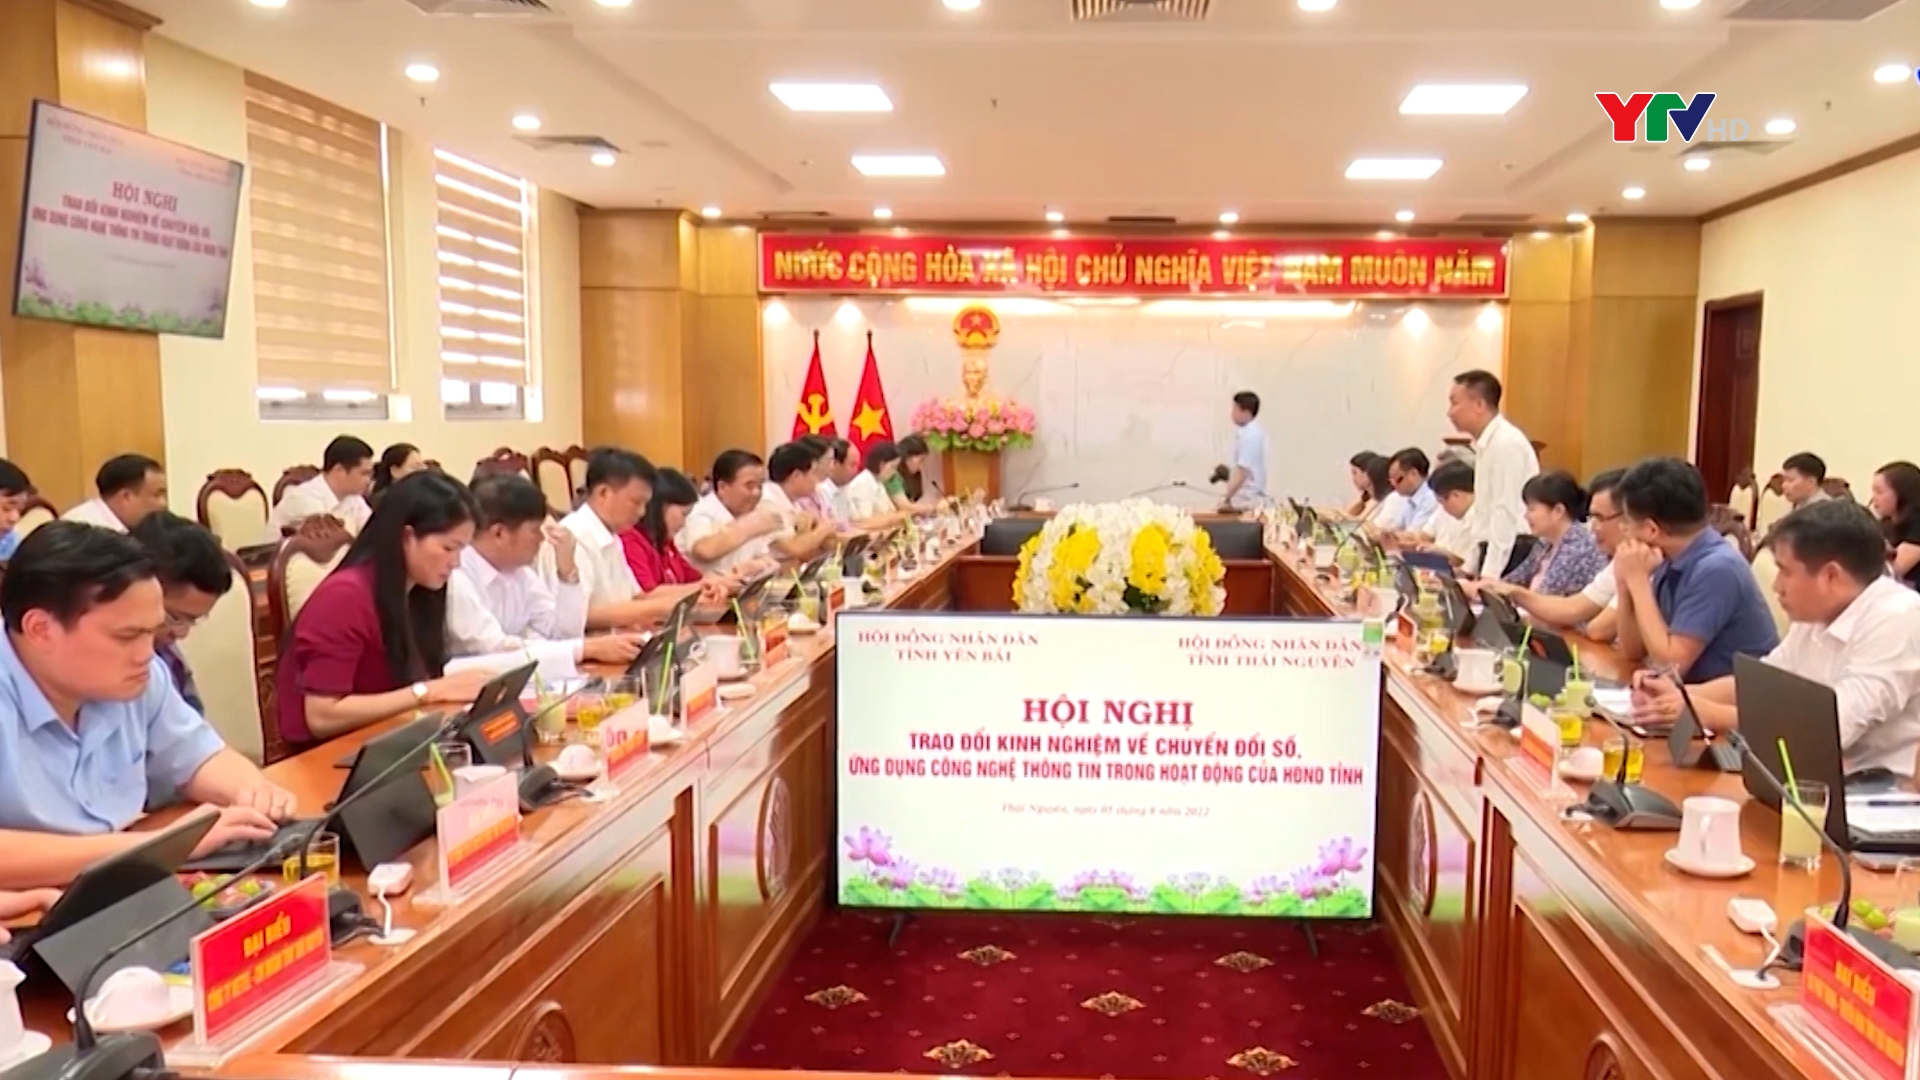 HĐND tỉnh Yên Bái trao đổi kinh nghiệm về chuyển đổi số, ứng dụng CNTT trong hoạt động của HĐND tỉnh tại Thái Nguyên